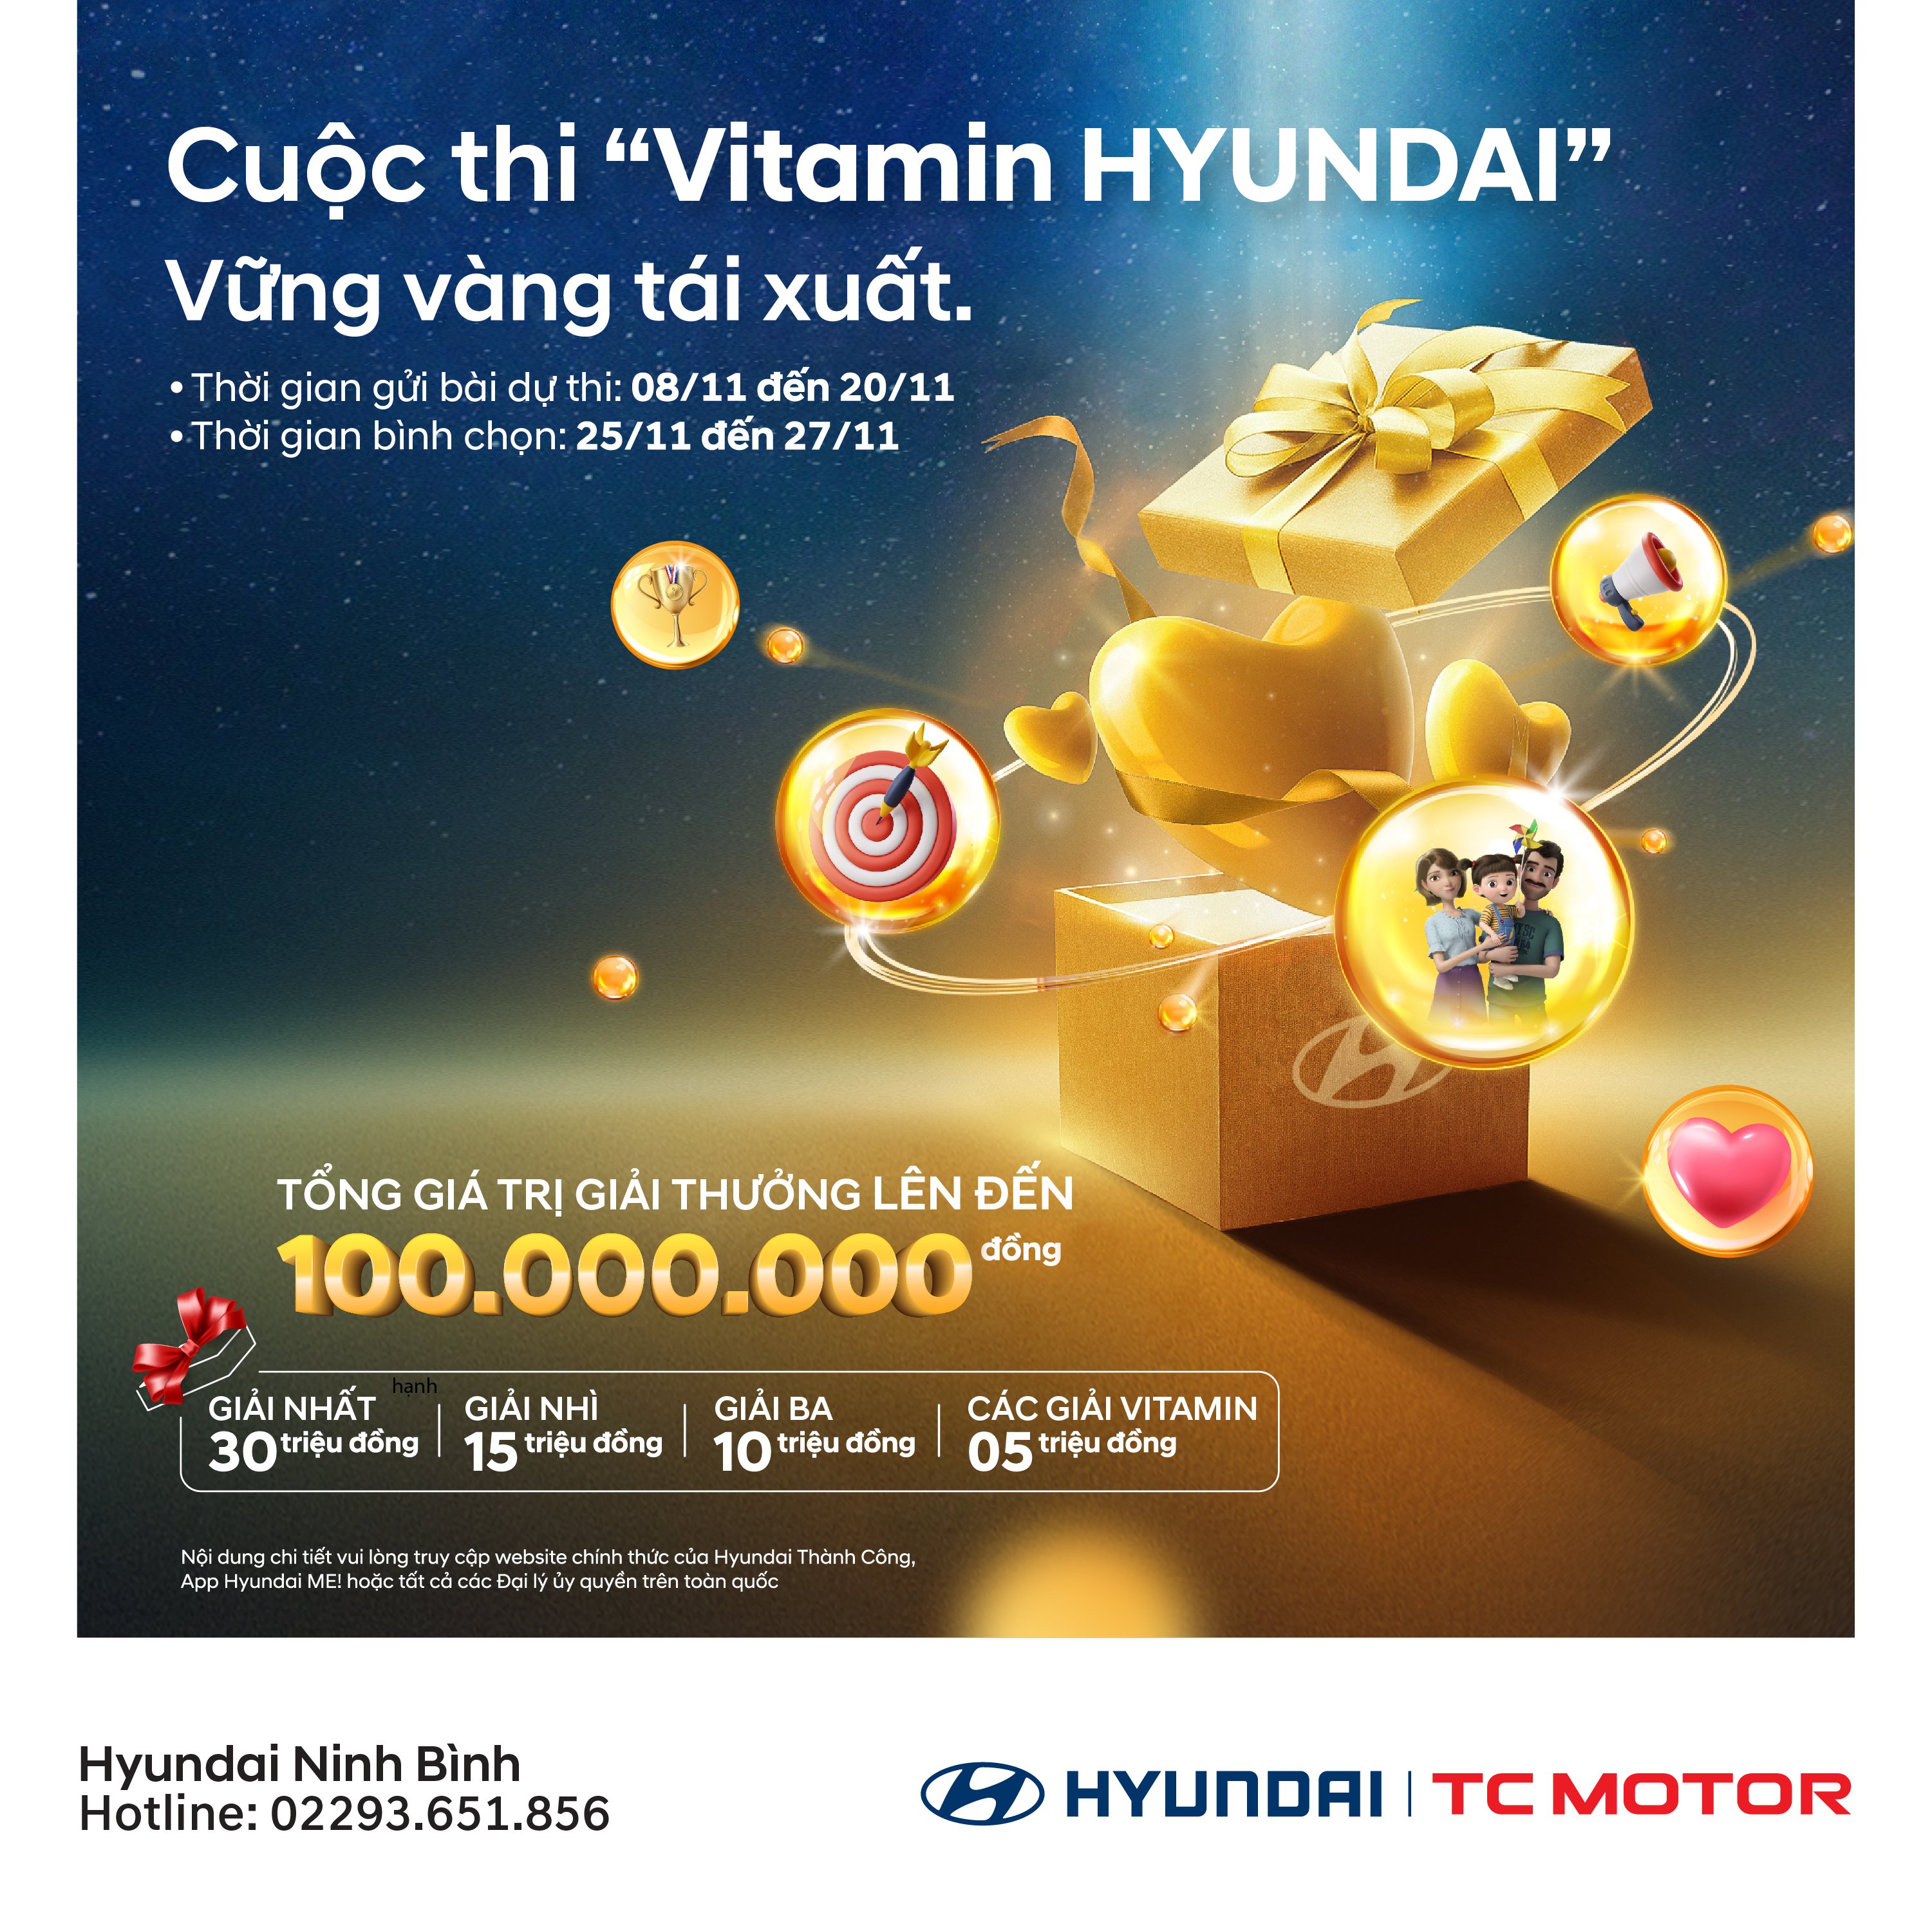 Bình chọn cuộc thi Vitamin HYUNDAI – Vững vàng tái xuất | Hyundai Ninh Bình